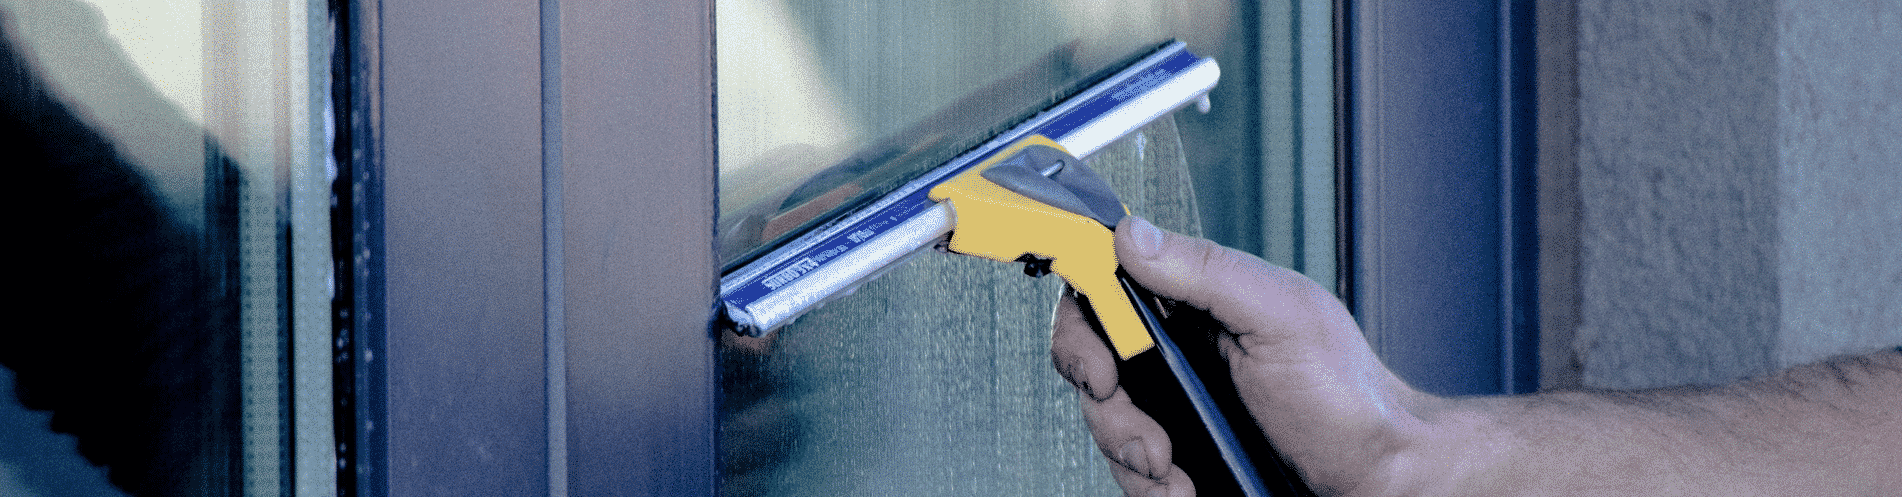 Как мыть окна шваброй для мытья окон